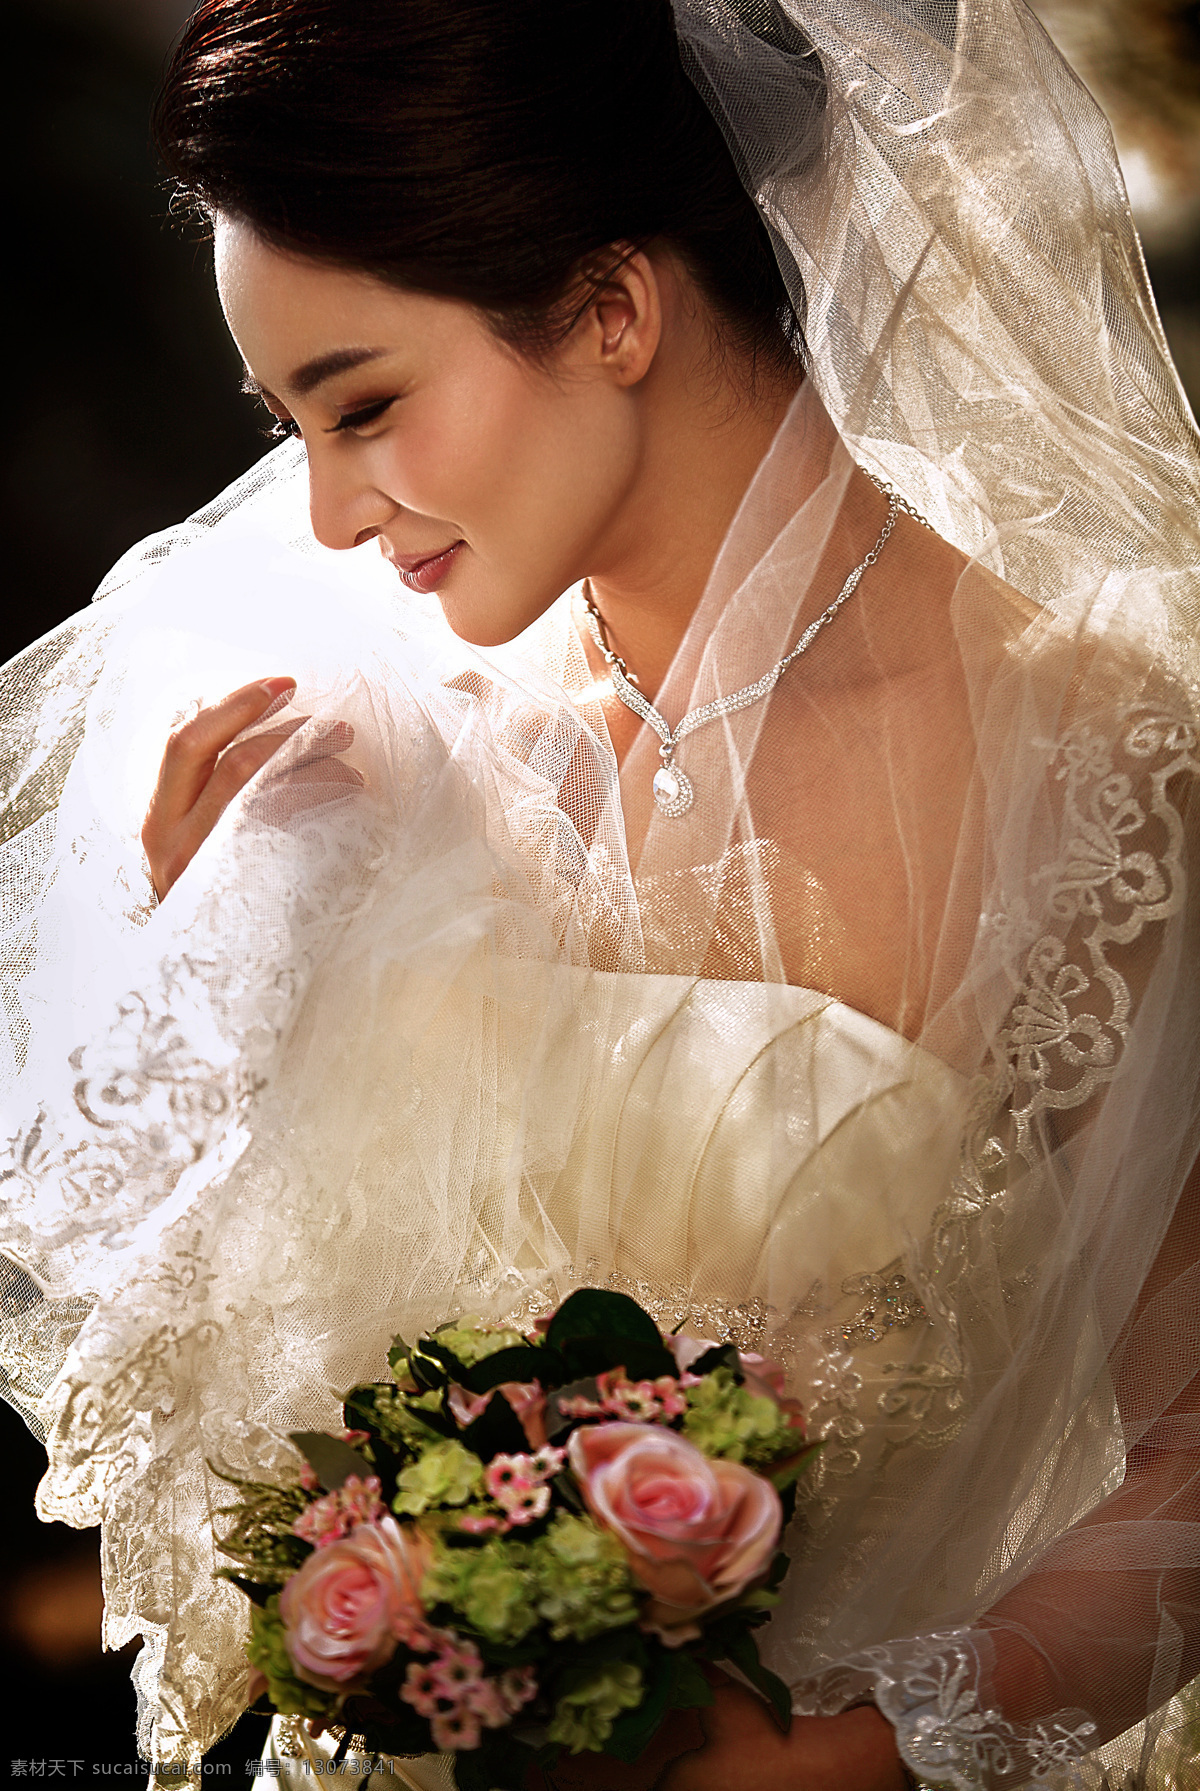 鲜花 美丽 新娘 新人情侣 结婚照 婚纱摄影 美女新娘 情侣图片 人物图片